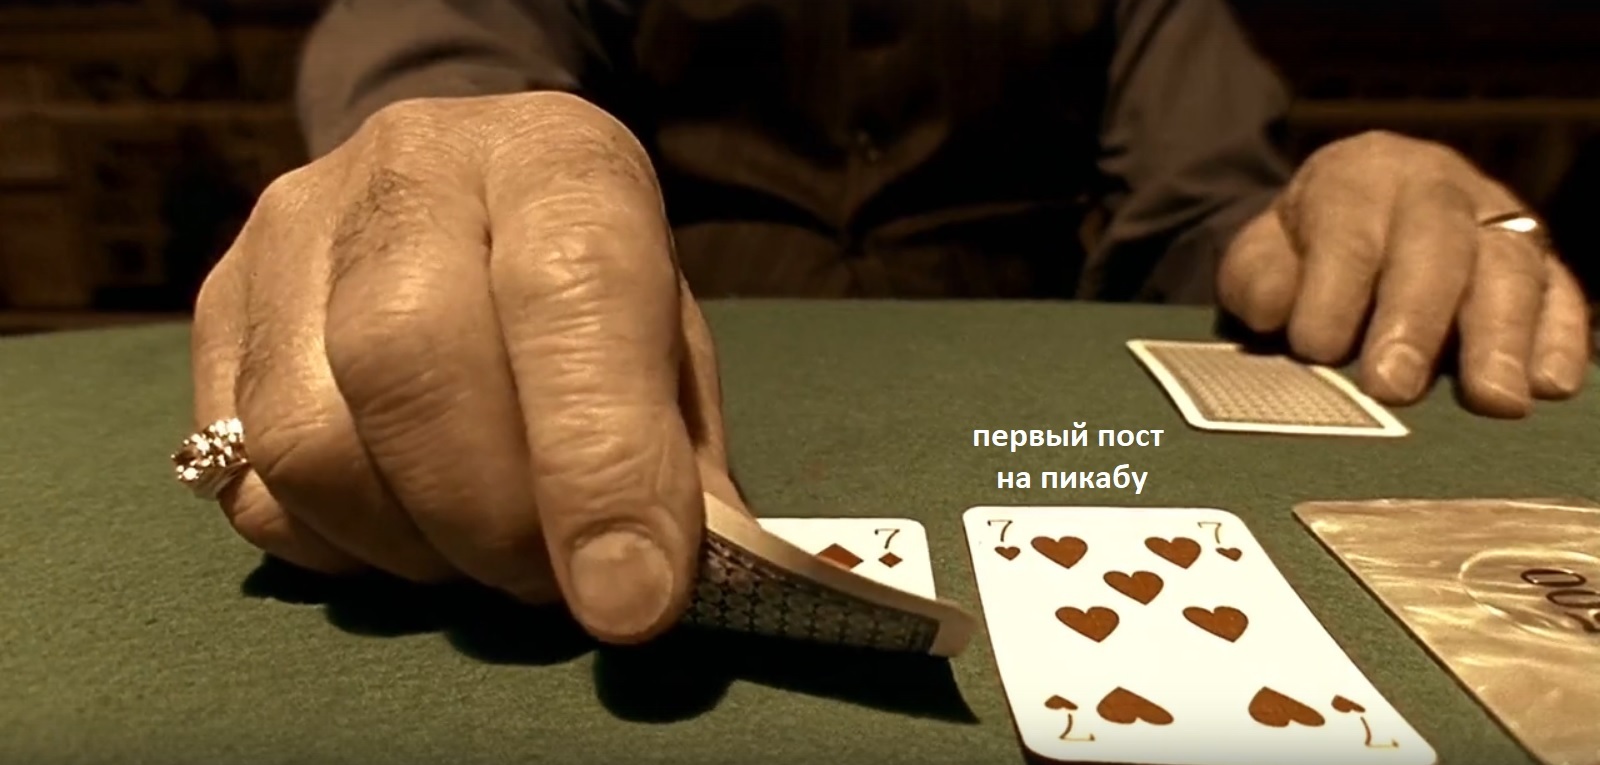 Играть в карты на деньги без первоначального. Карты деньги два ствола Покер. Покер два ствола. Карты деньги два ствола игра. Карты деньги два ствола проиграл.